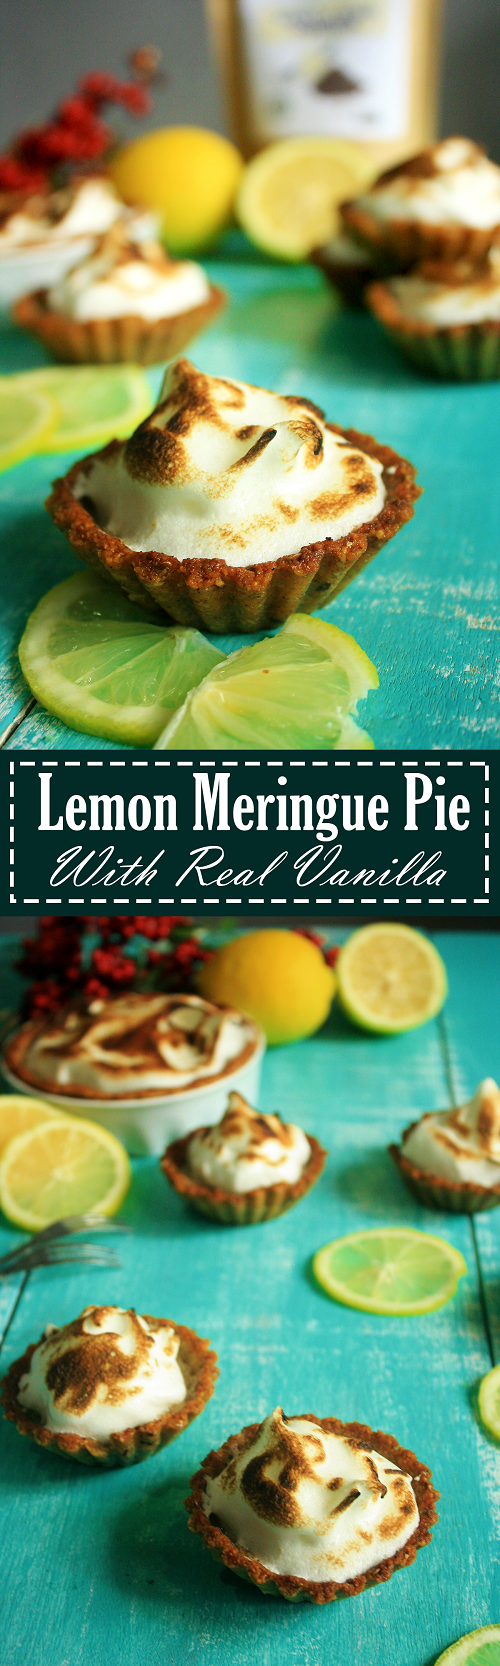 Lemon Meringue Pie Recipe by Summer Day Naturals